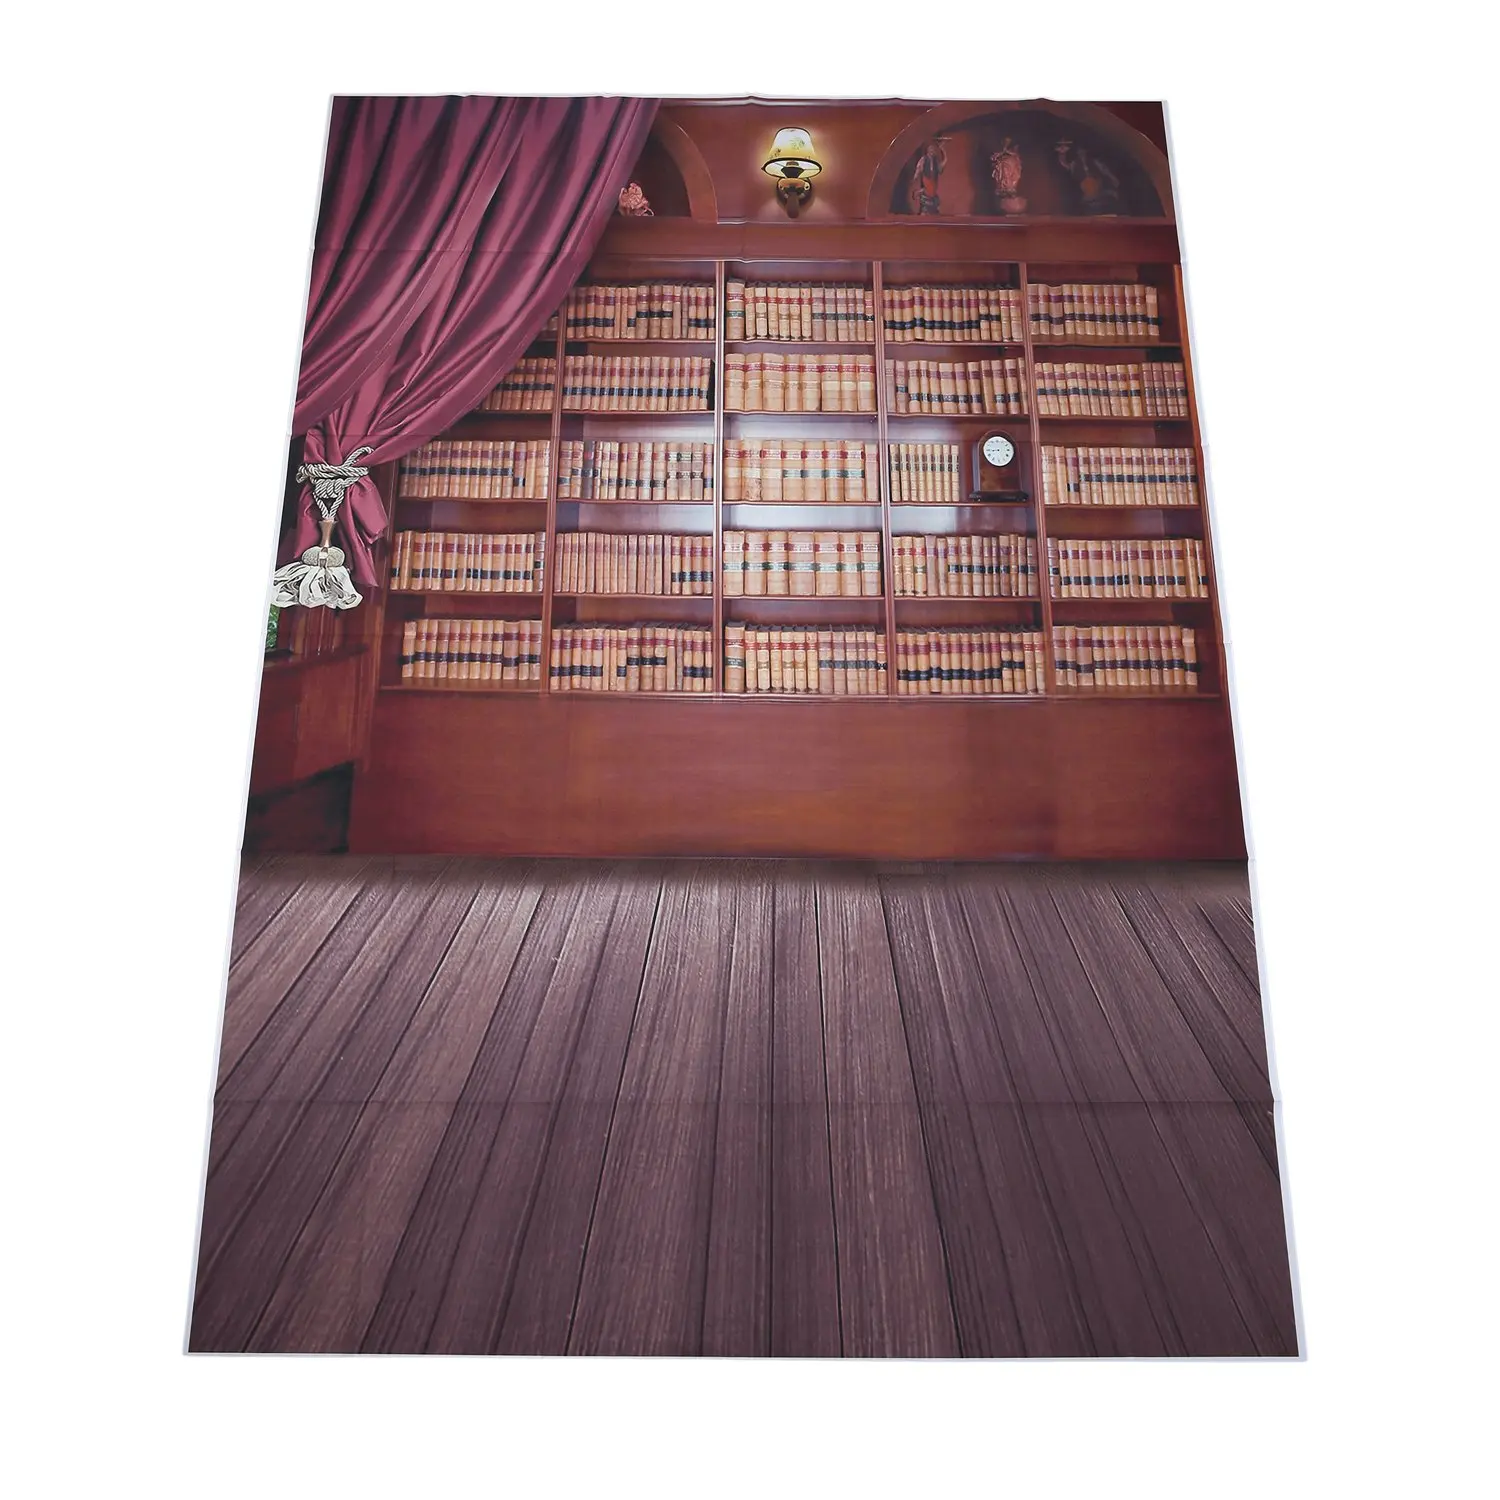 

Винтажный фон для фотосъемки с изображением библиотеки книг деревянного пола реквизит для фотостудии 5x7 футов